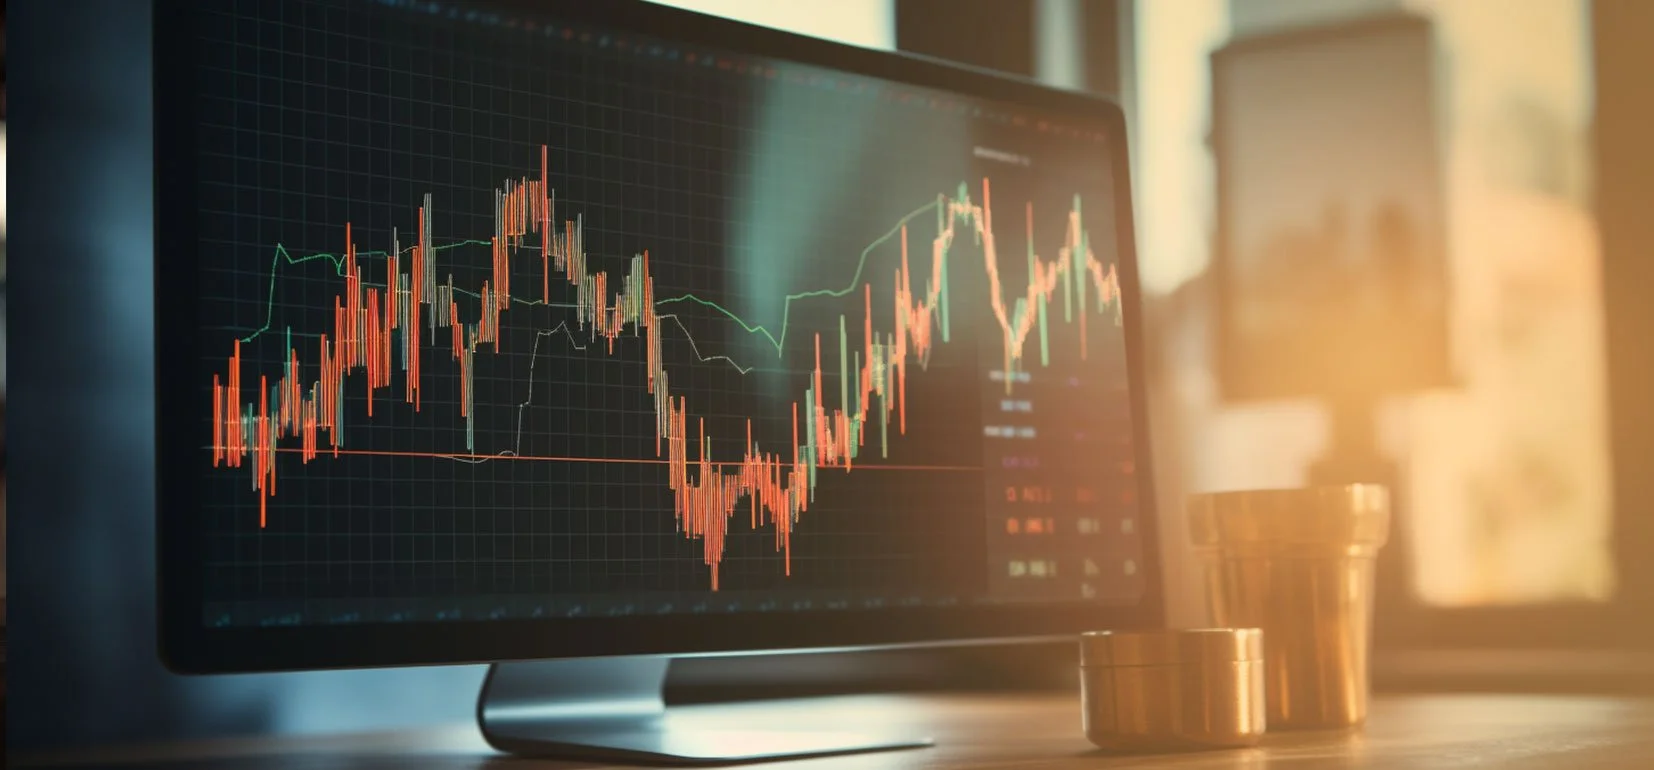 Analyse technique : guide ultime pour les débutants en trading